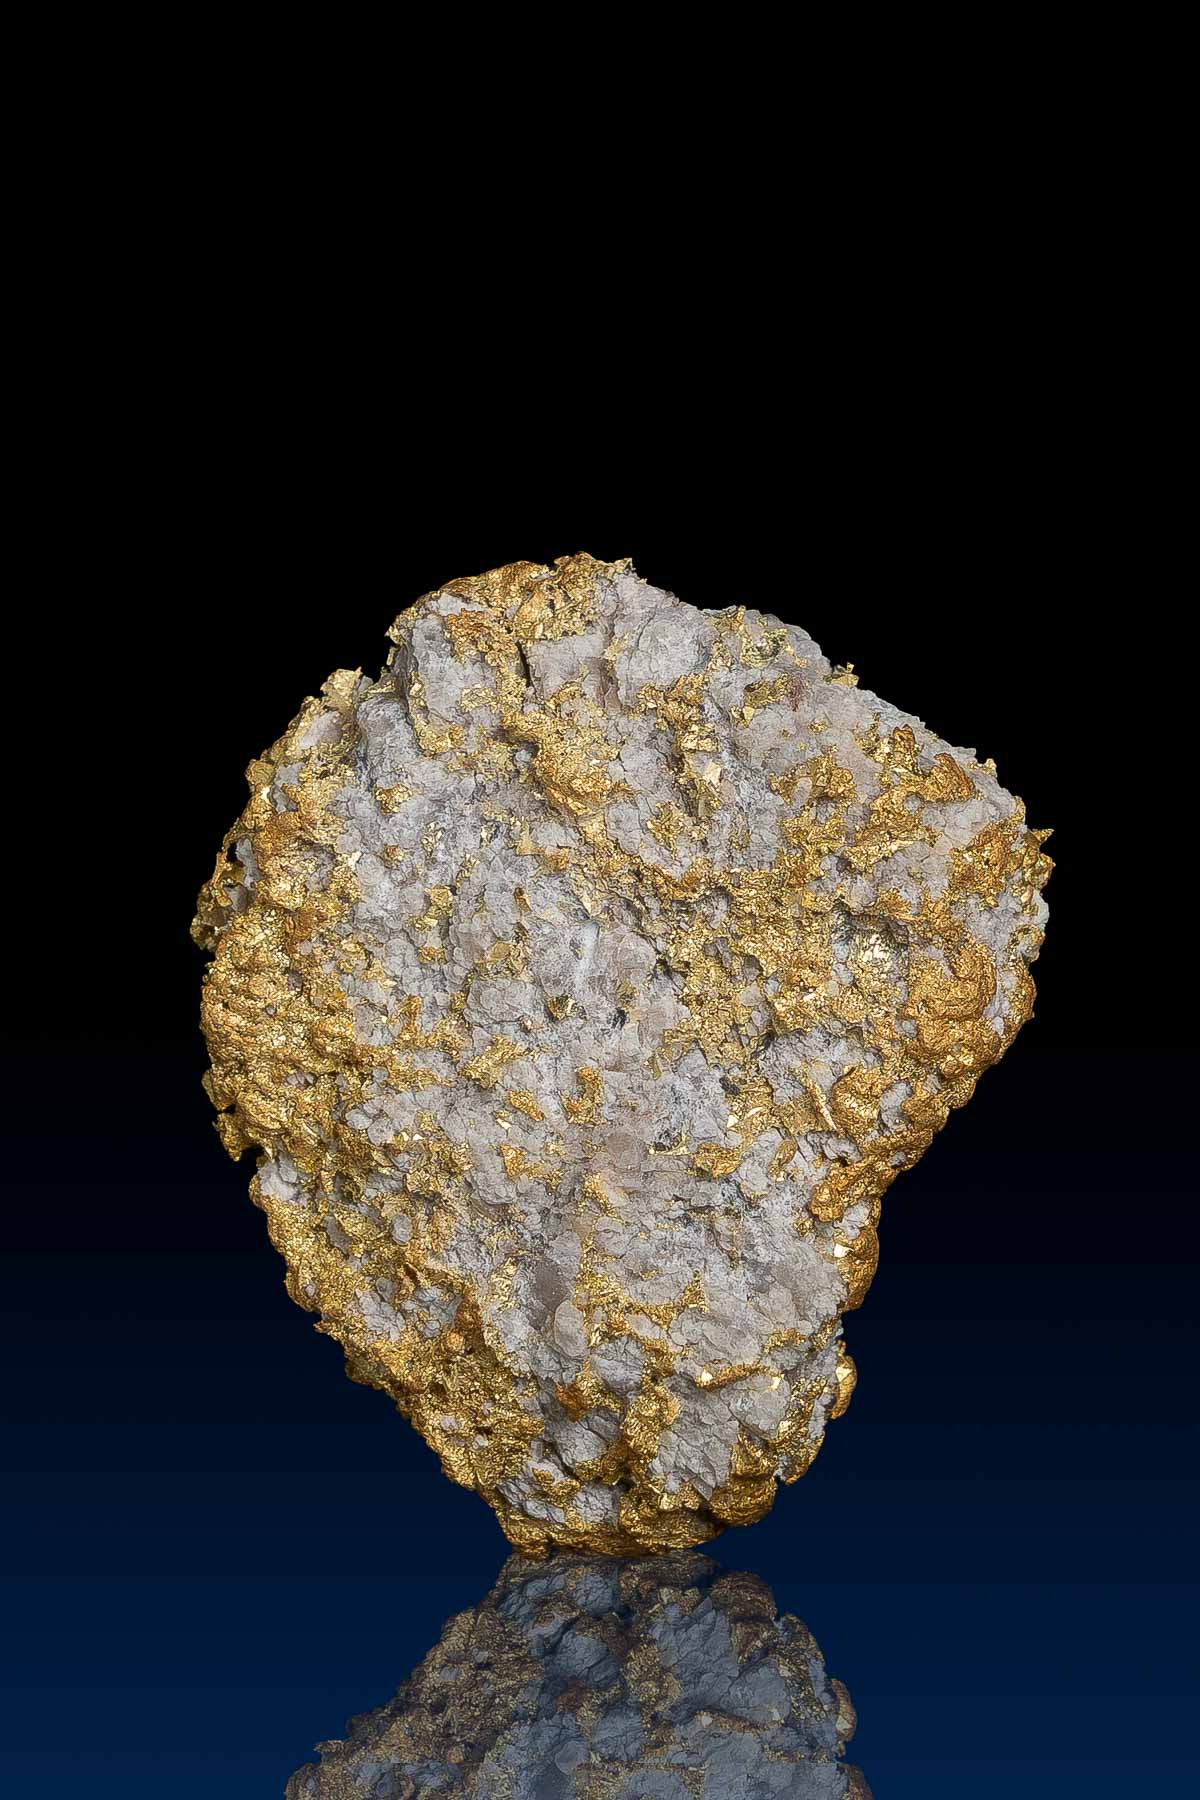 Unique and Rare Arizona Gold Nugget Specimen - Pima County